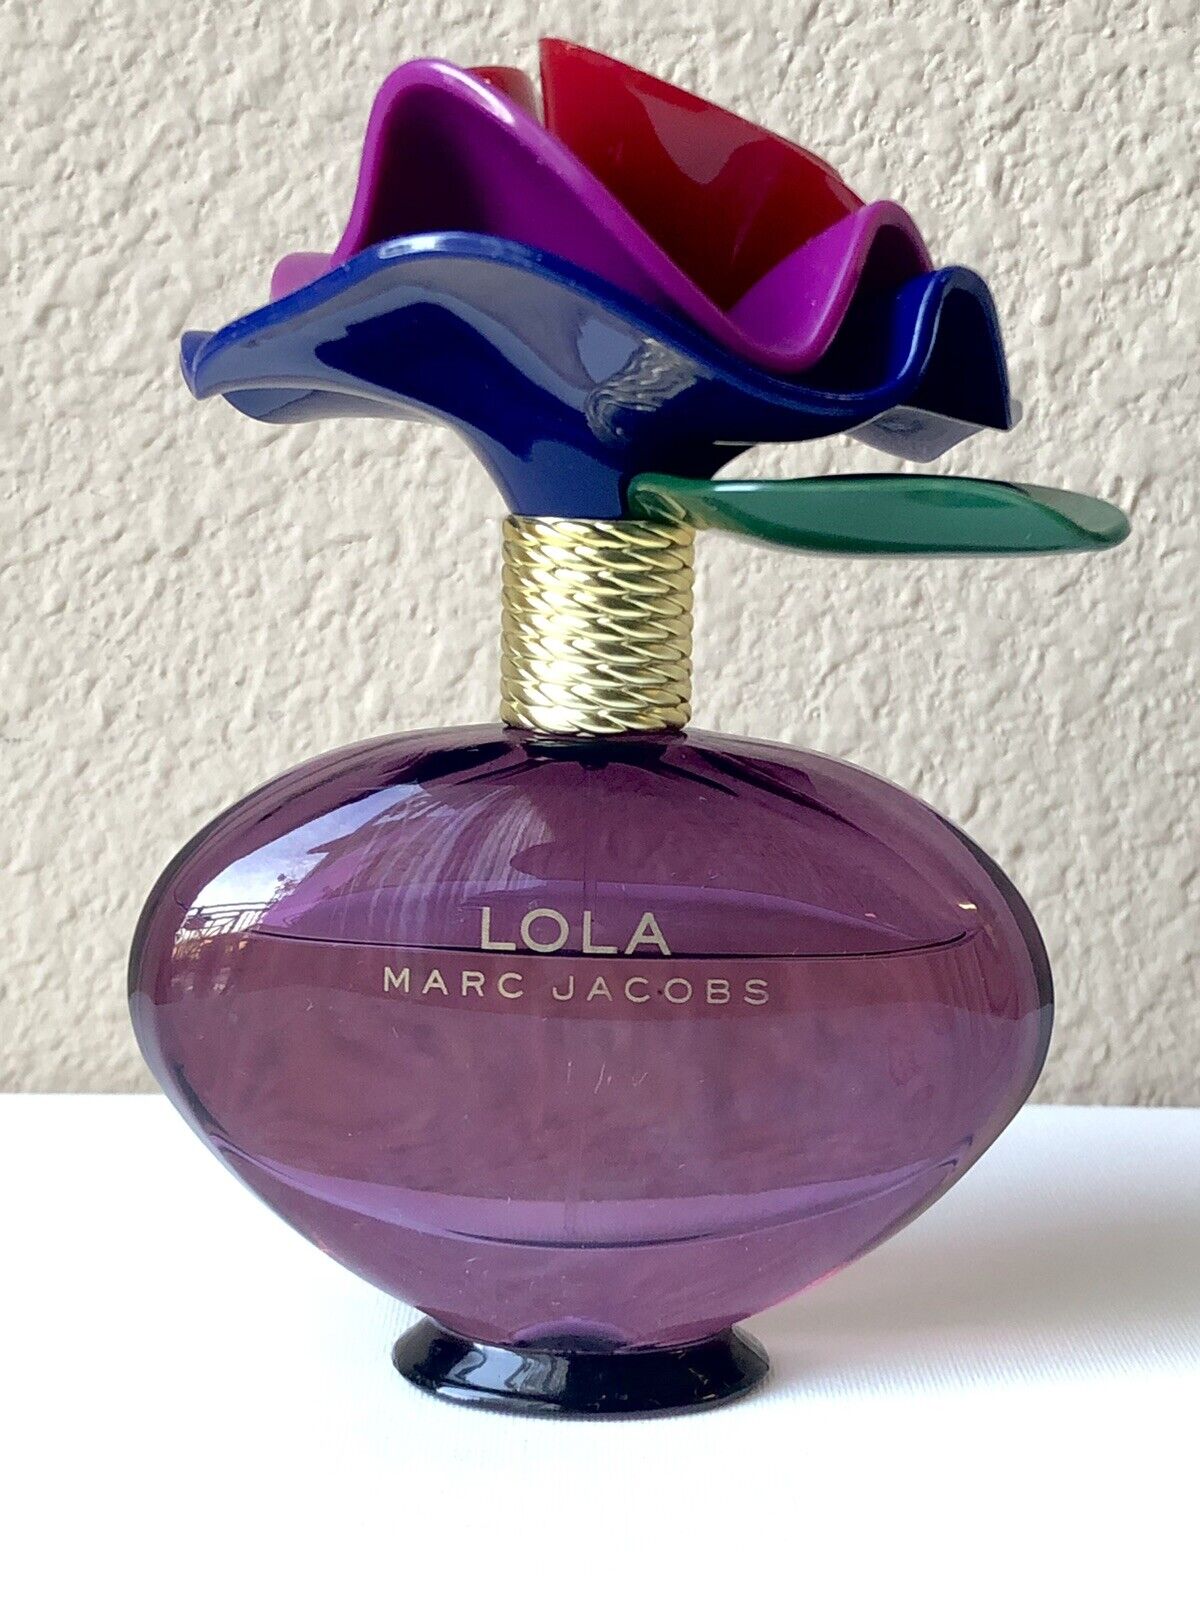 Marc Jacobs - Lola - Eau De Parfum Spray 3.4 fl oz 100 ml Bottle